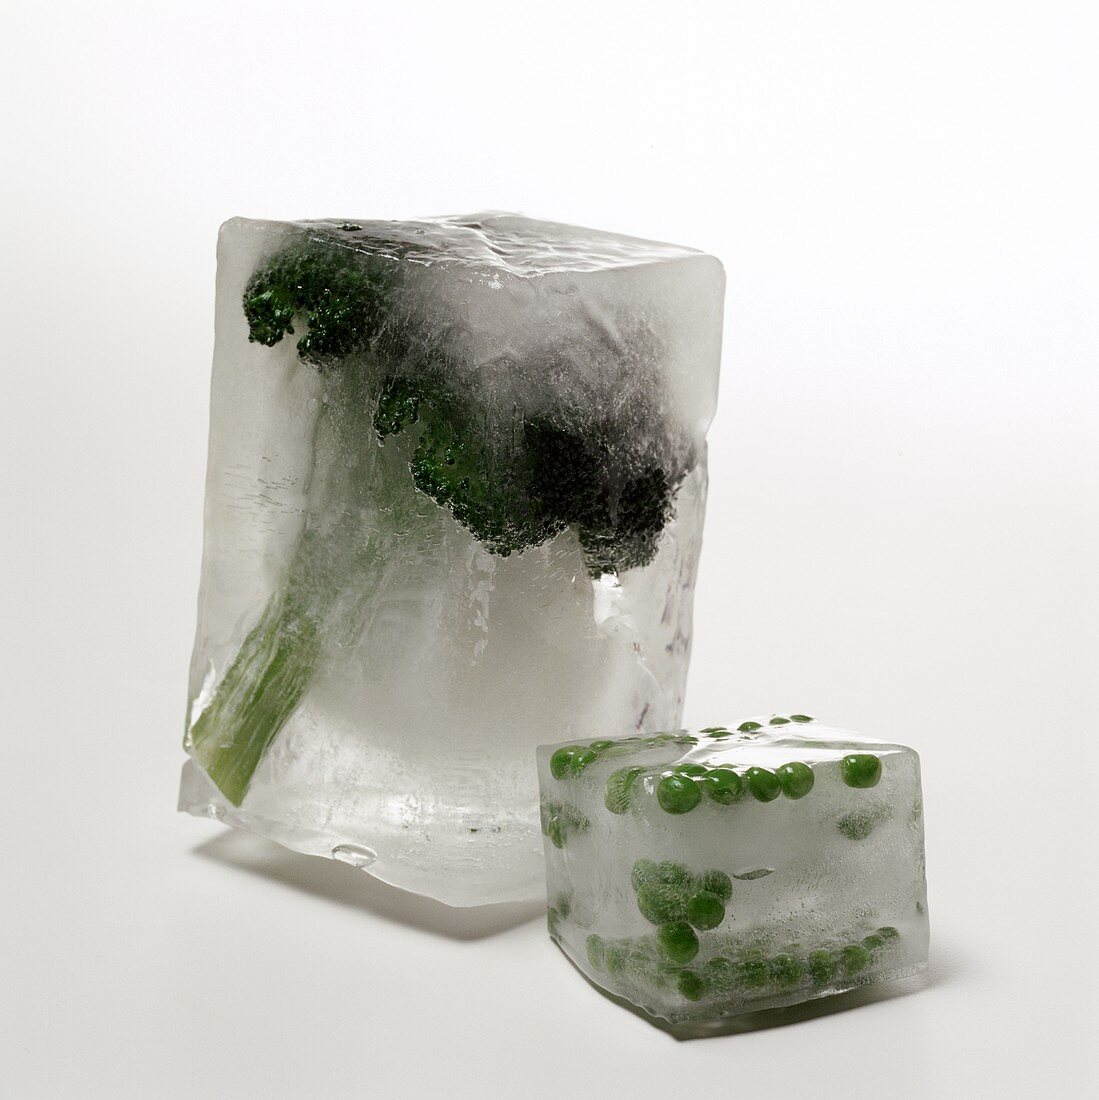 Brokkoli und Erbsen, in Eisblöcken gefroren